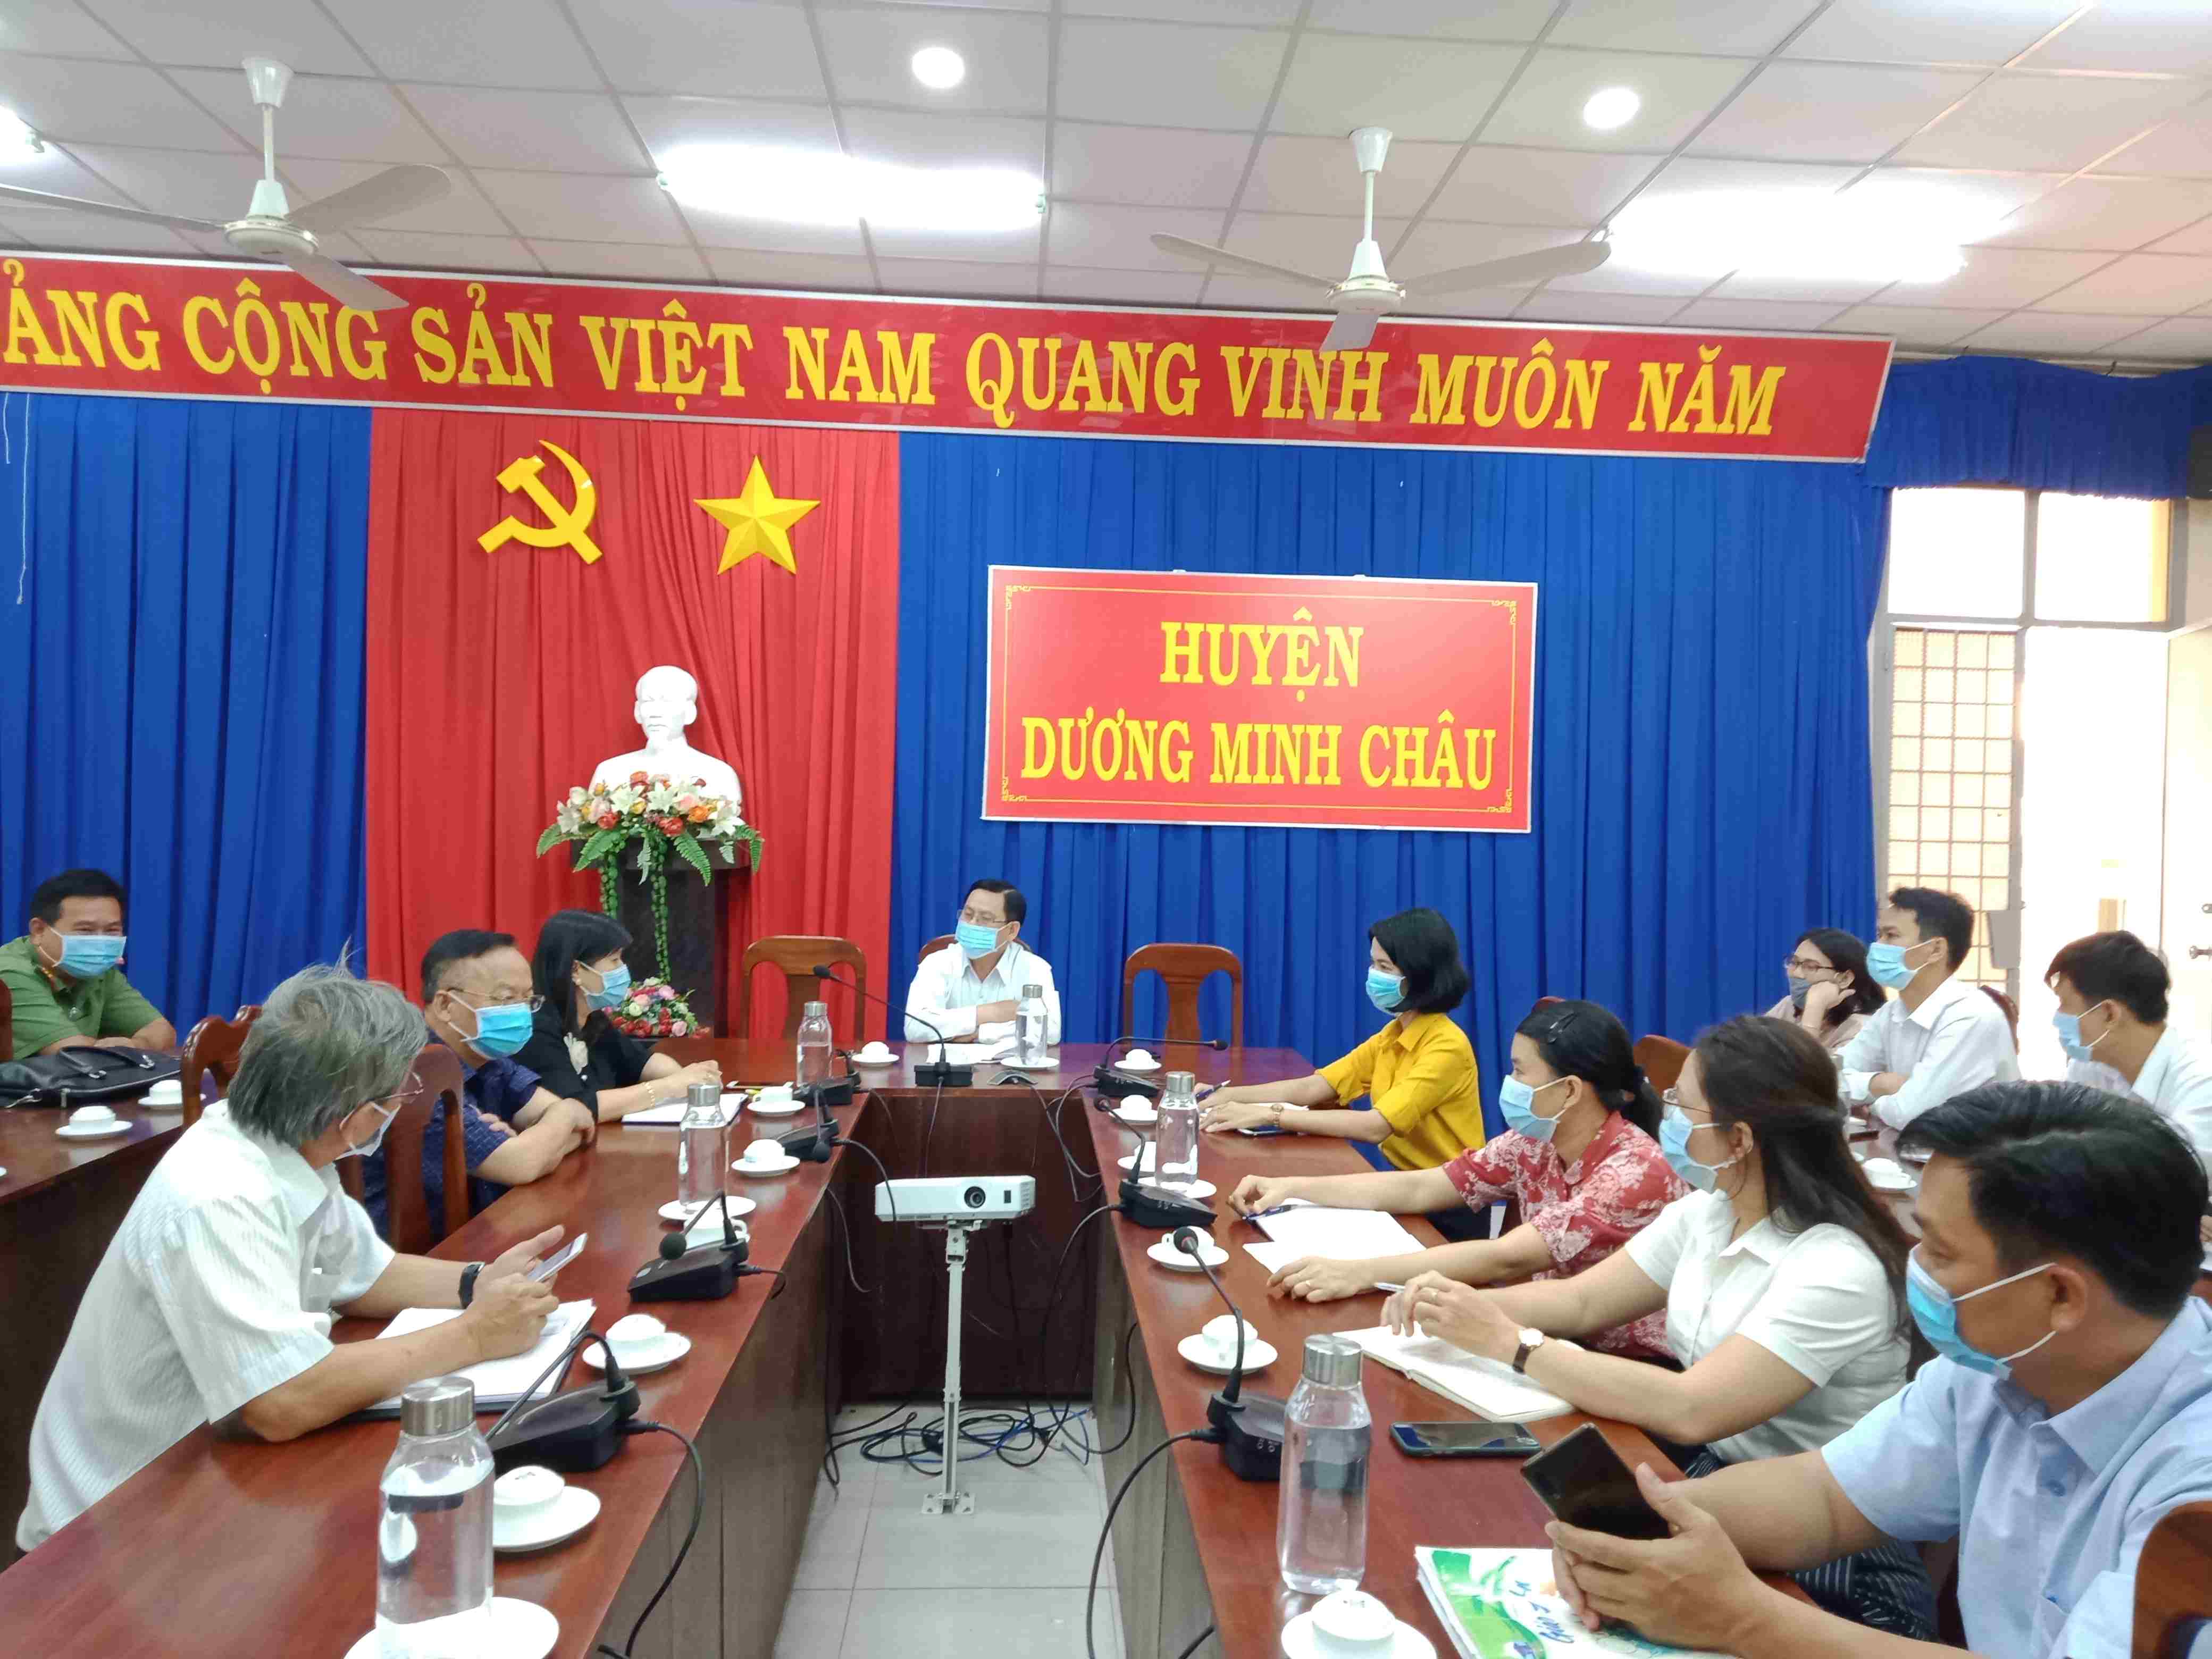 Huyện Dương Minh Châu: Chọn Trường THPT Dương Minh Châu làm khu cách ly tập trung, sẵn sàng tiếp nhận 100 công dân